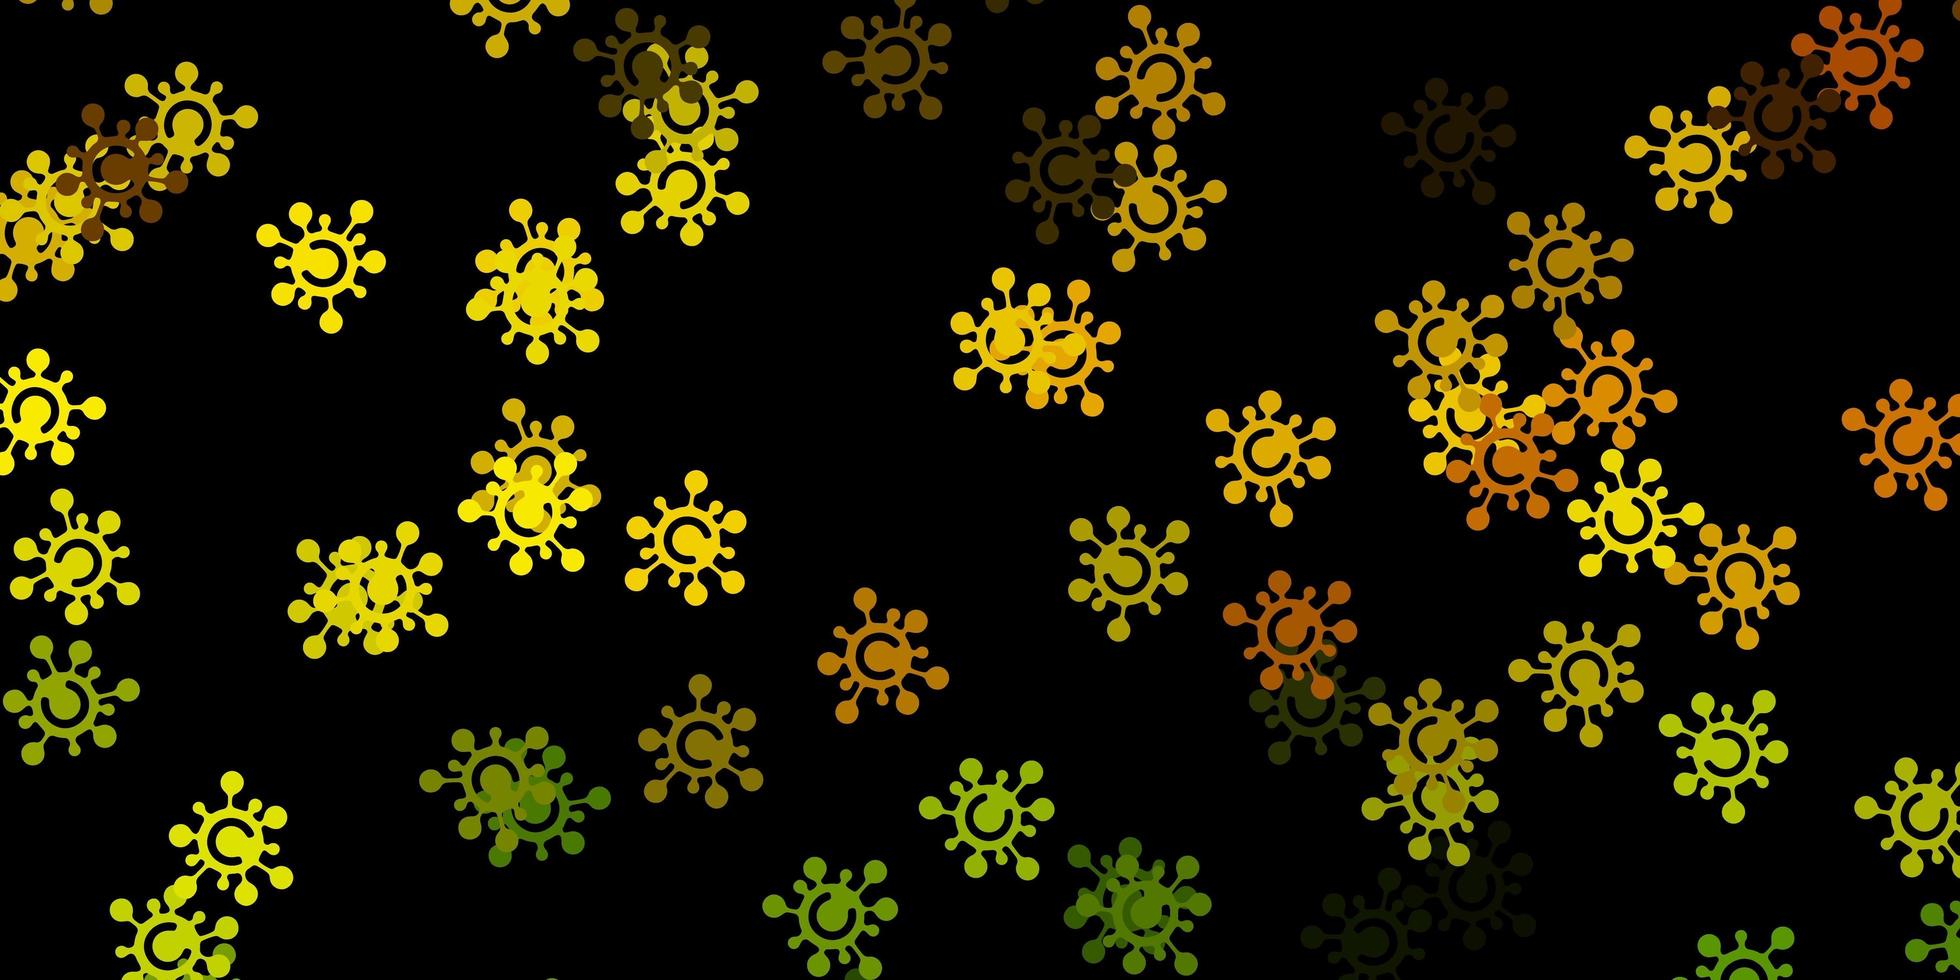 motif vectoriel jaune vert foncé avec des éléments de coronavirus